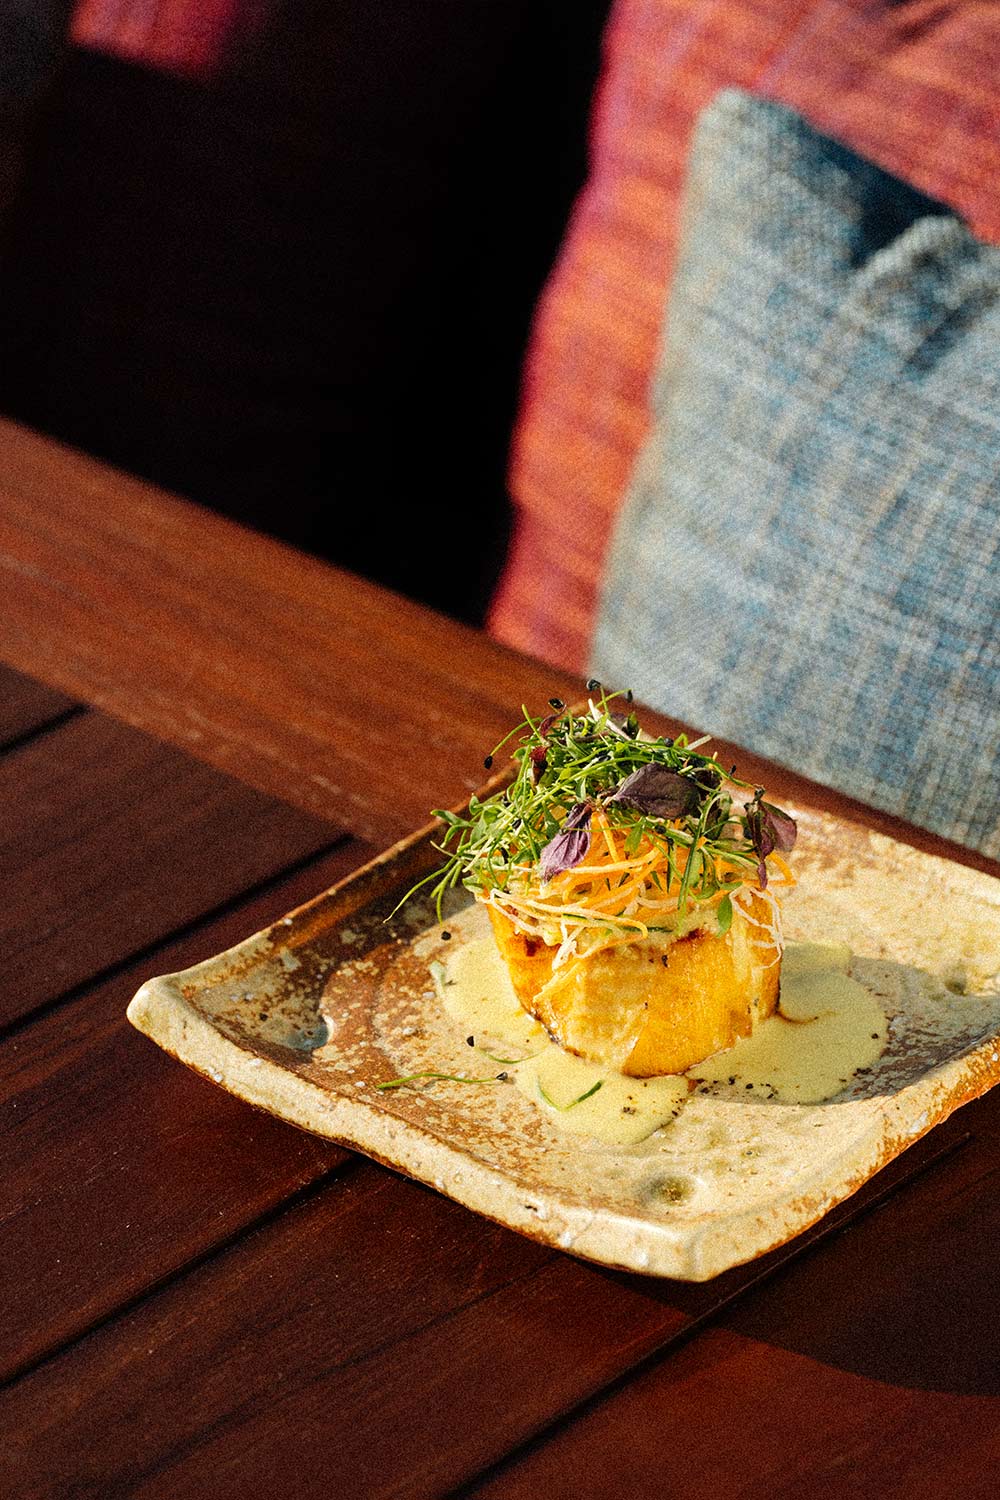 Zuma Capri: Relish contemporary izakaya cuisine at Capri Palace Jumeirah's  new Italian restaurant